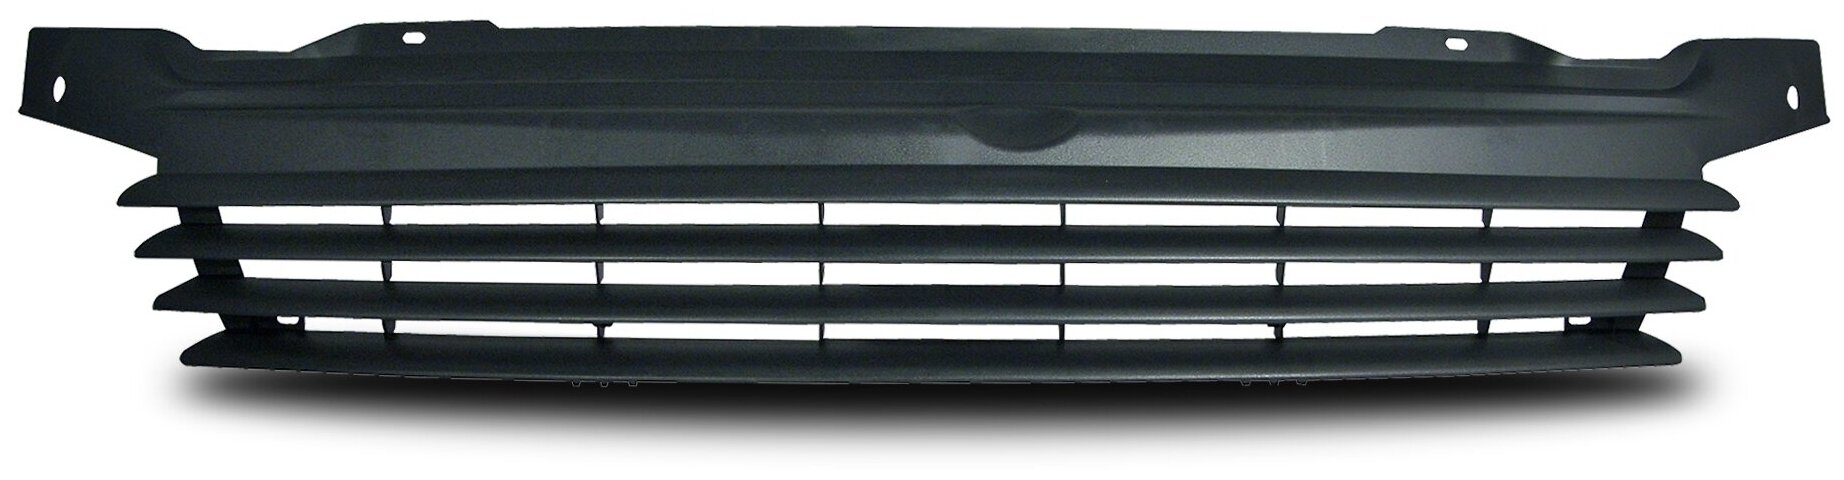 Решетка радиатора VW Transporter T4 рестайлинг 1996-2003 тюнинг черная без значка